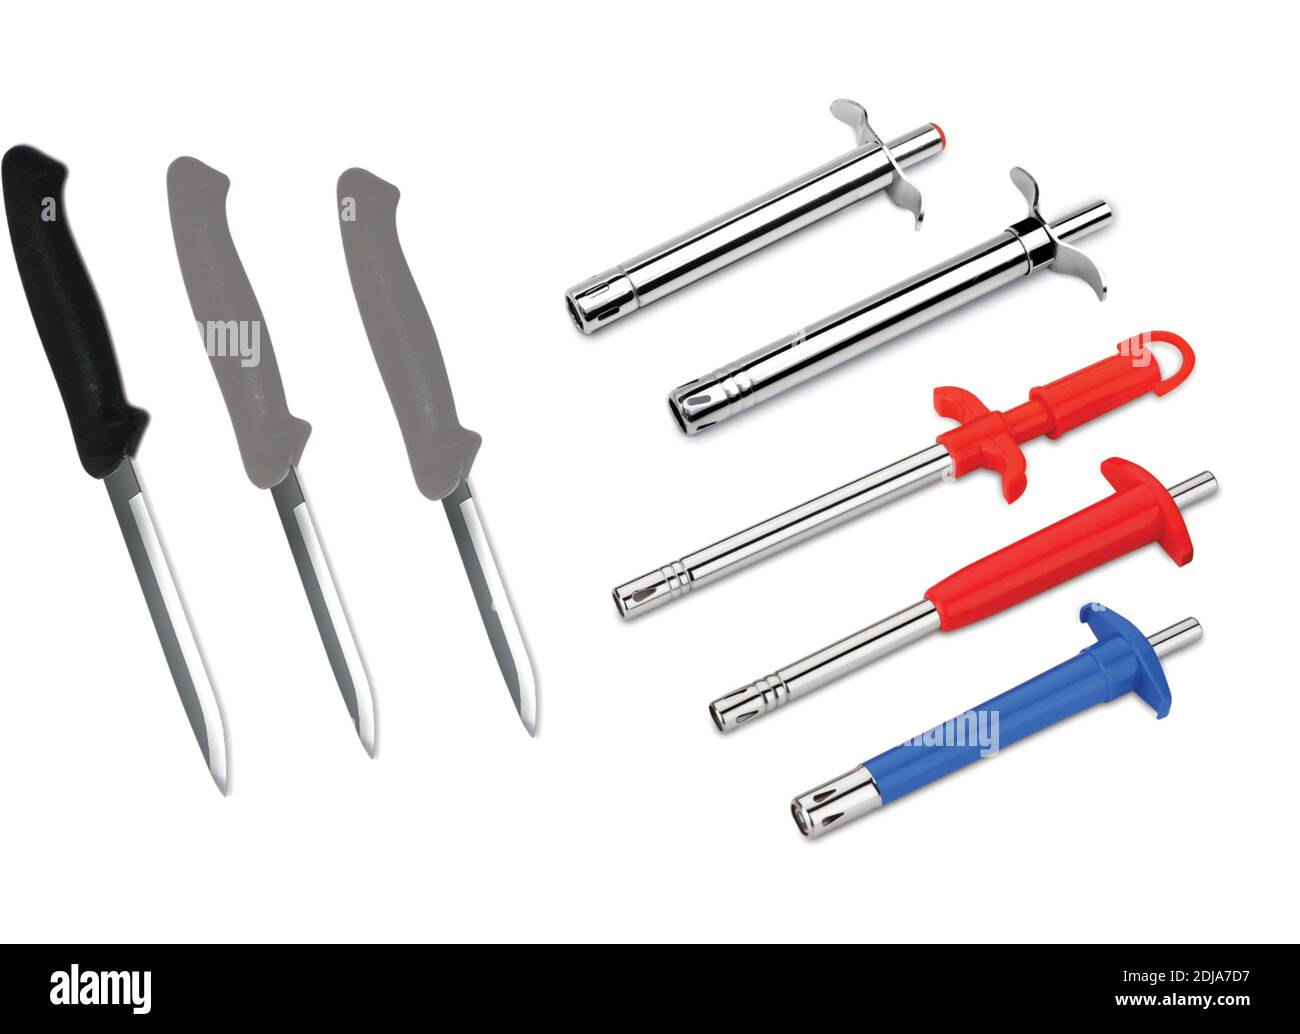 Ensemble de couteaux de cuisine utilisation pour la cuisine, coupe de couteau tranchant, ustensiles de cuisine, allume-gaz Banque D'Images